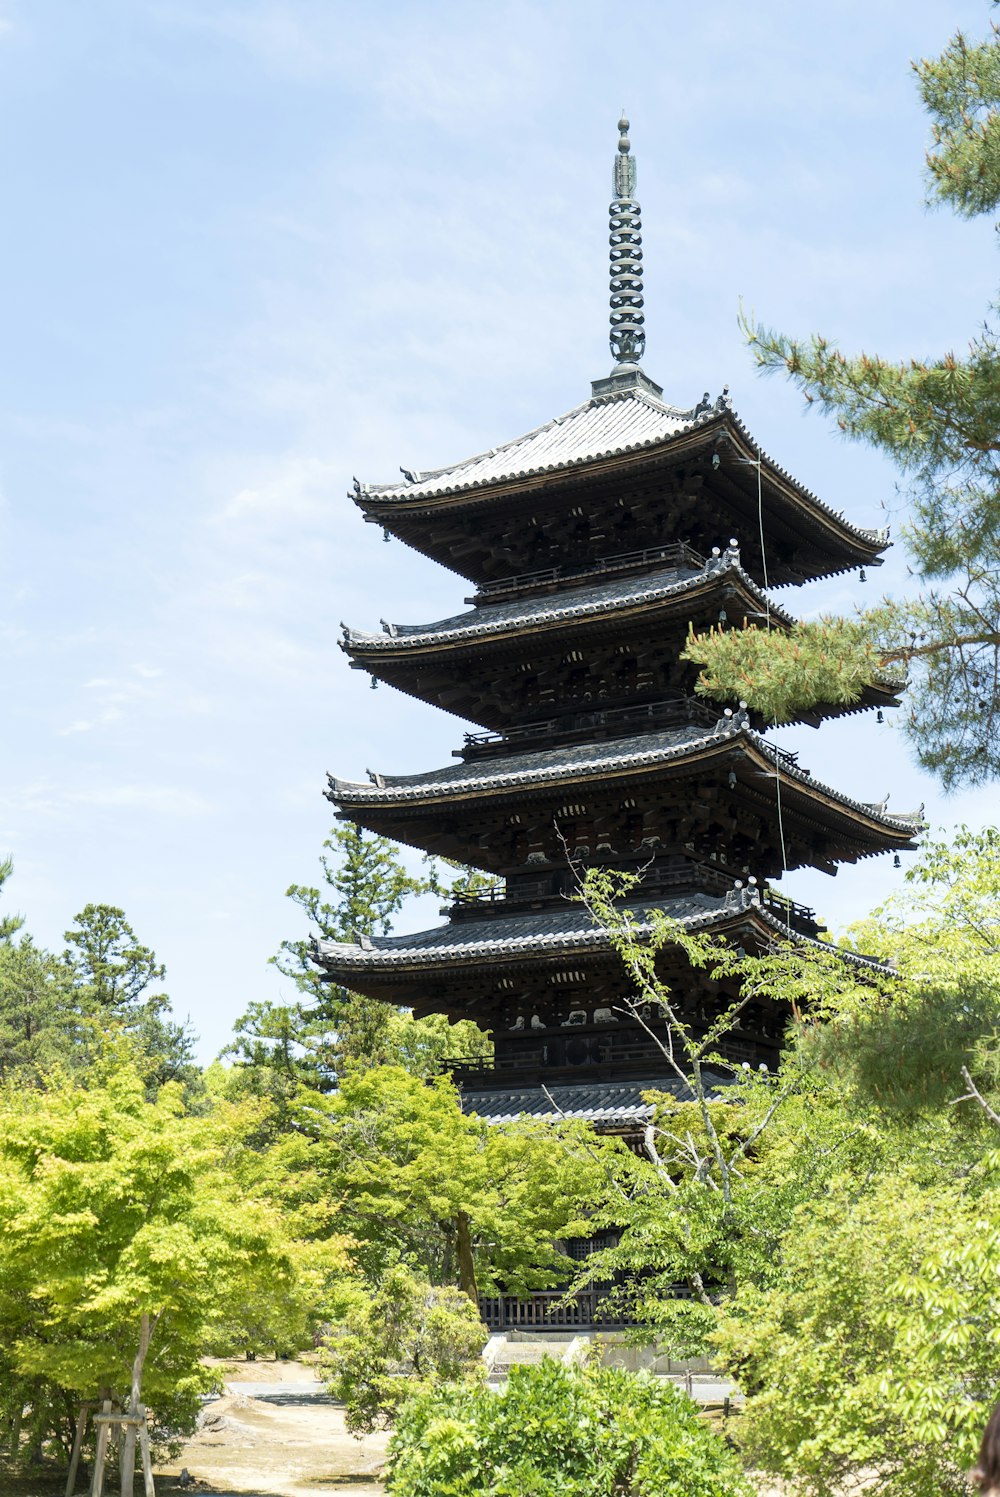 pagoda near trees